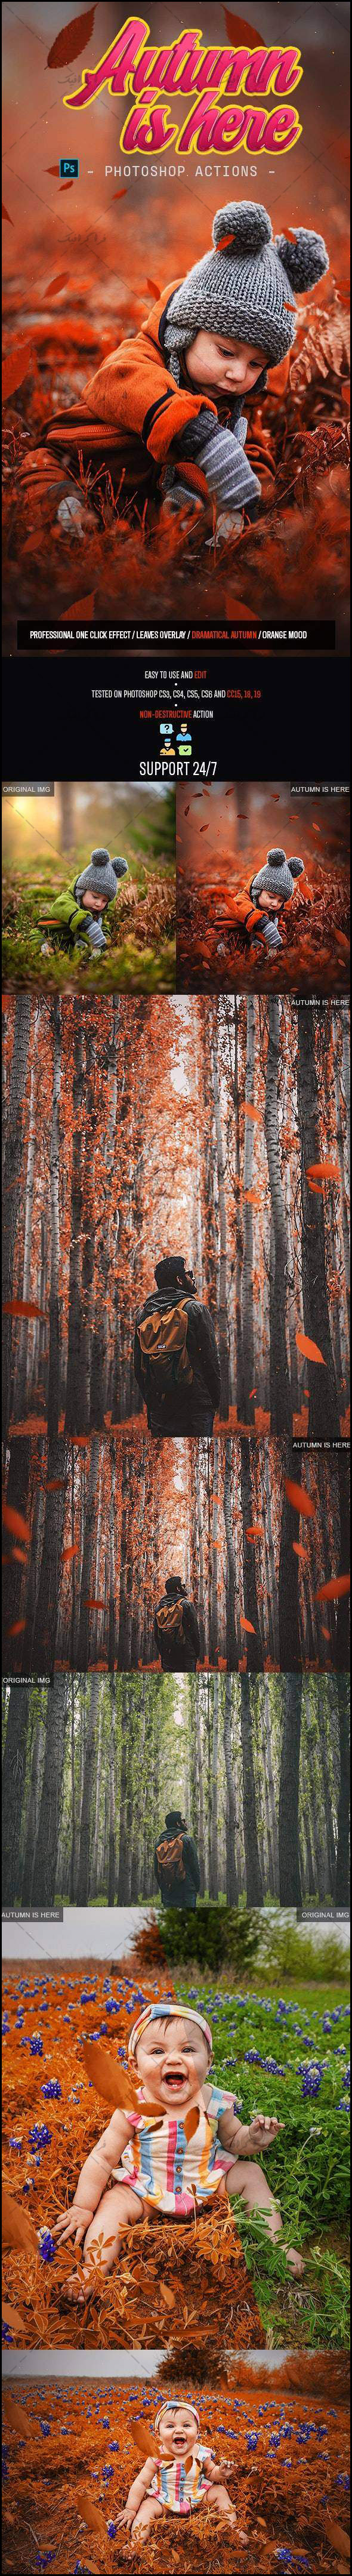 دانلود اکشن فتوشاپ ساخت افکت پاییز - Autumn Photoshop Action